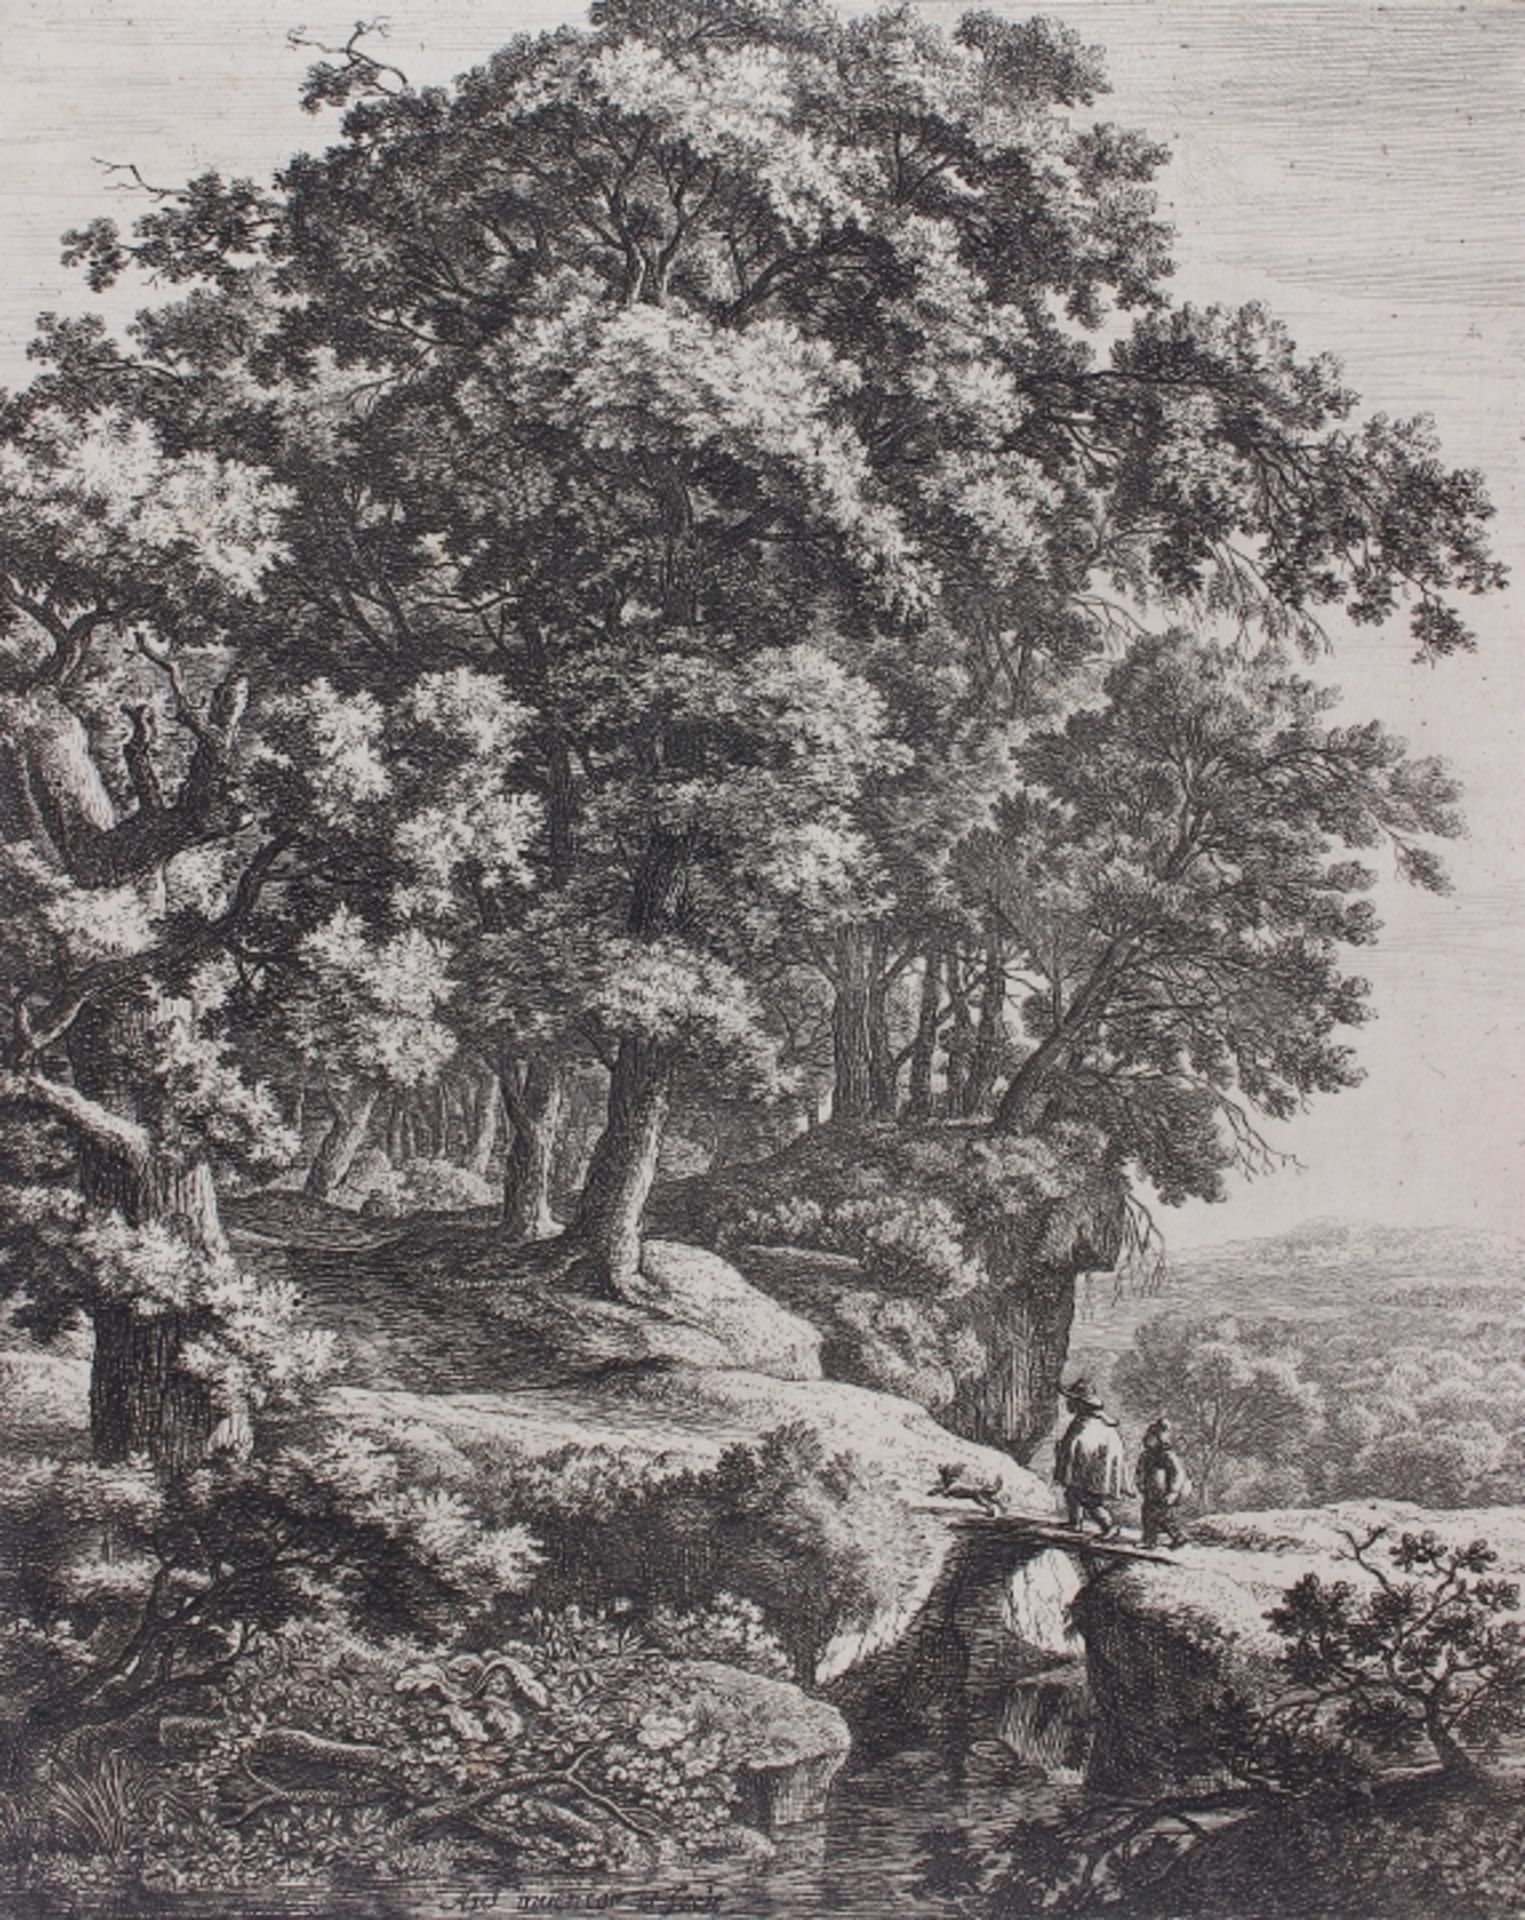 Radierung - Anthonie WATERLOO (Niederlande c.1610-1690) "Die Landschaft mit dem Buckligen",